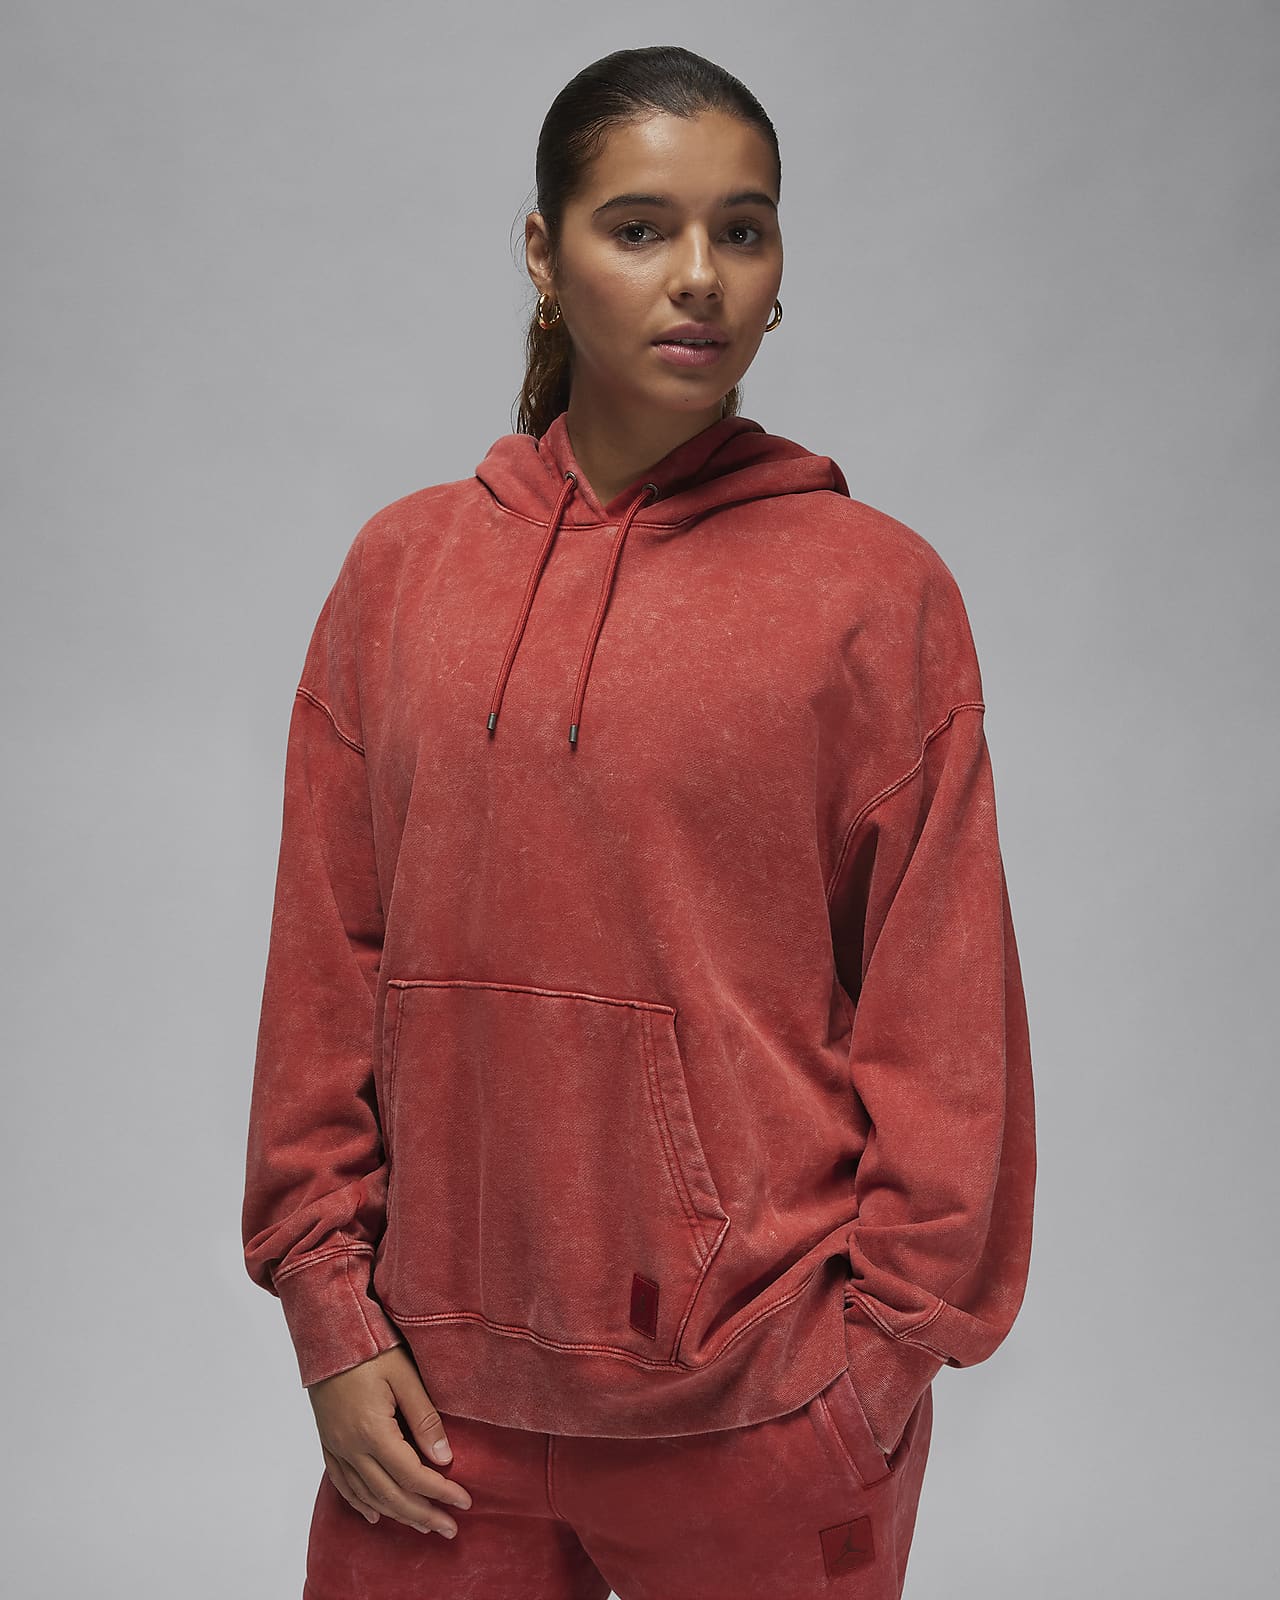 Γυναικεία μπλούζα με κουκούλα και ξεθωριασμένη όψη Jordan Flight Fleece